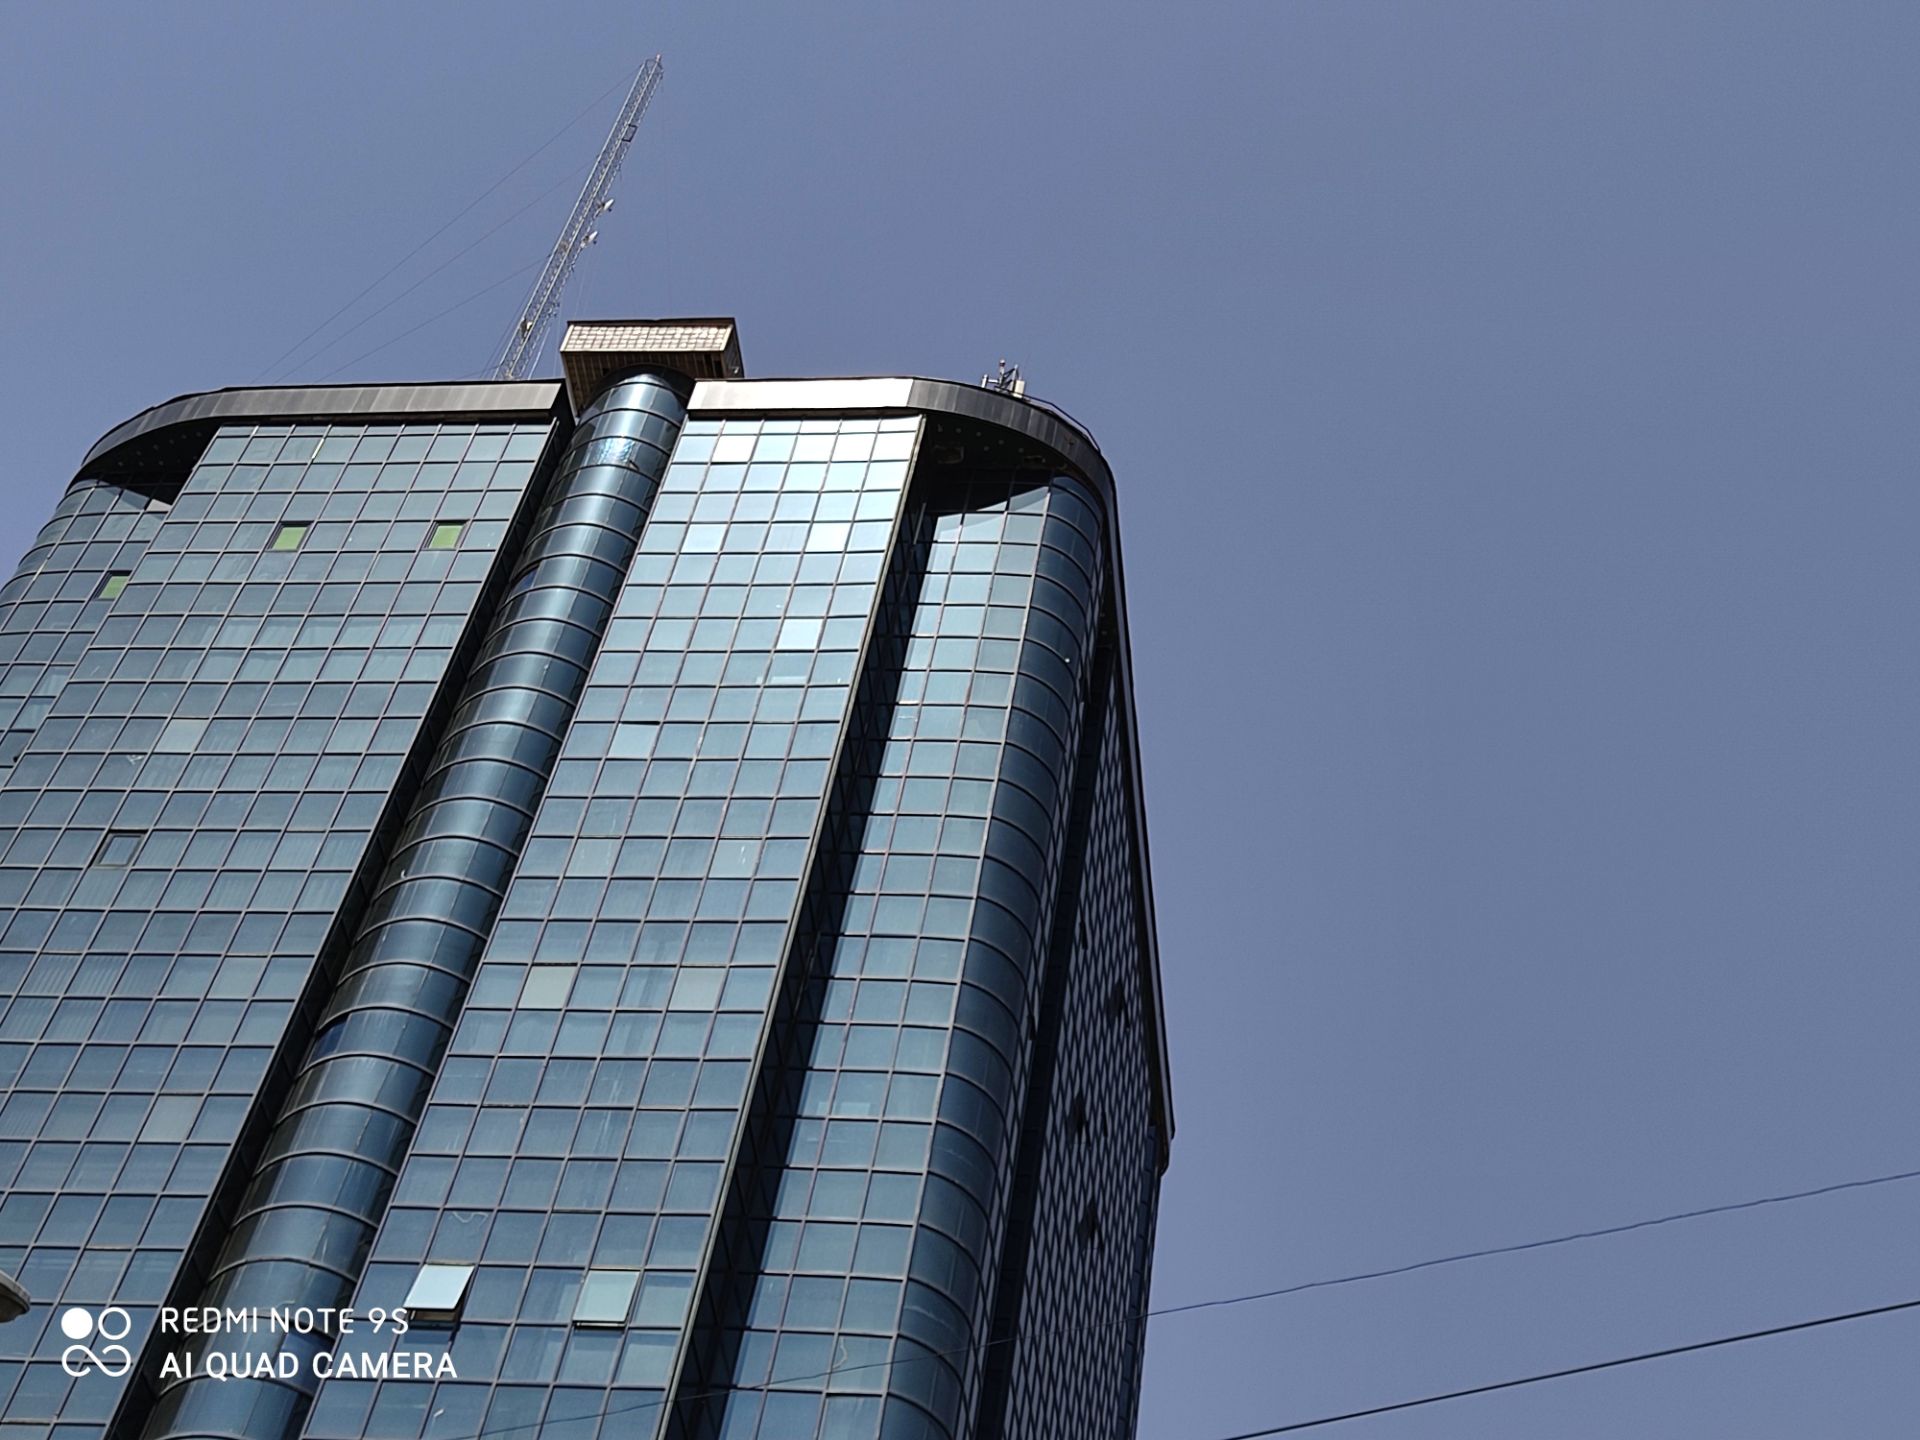 نمونه عکس ردمی نوت 9 اس - نمای ساختمان بلند از نزدیک